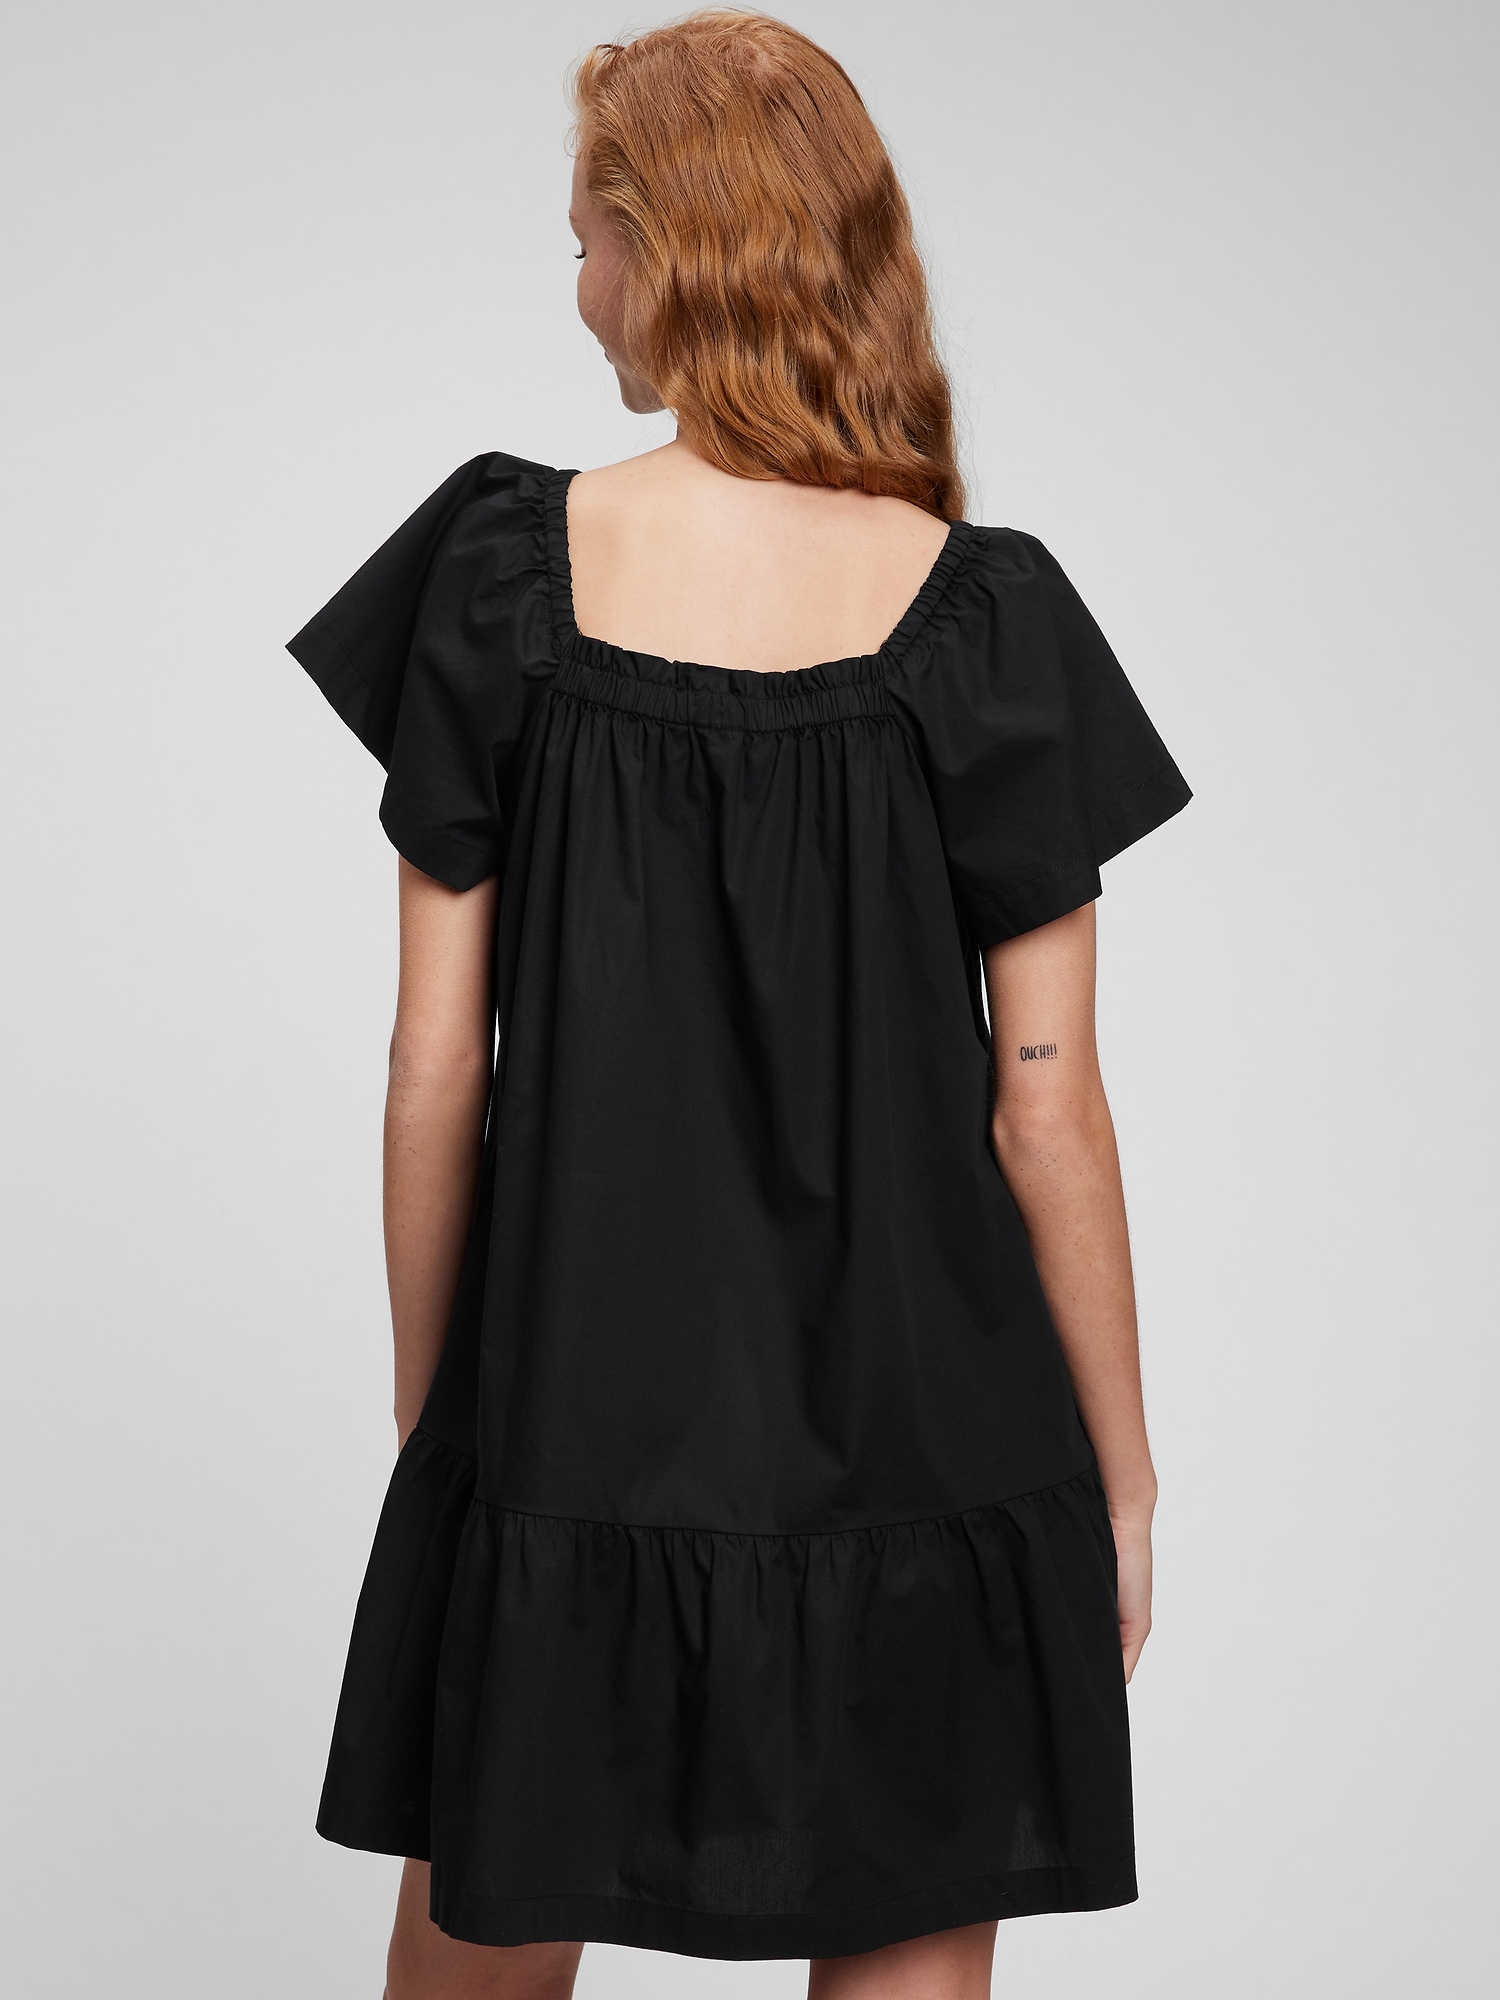 Cute Summer Dress Women Flutter Short Sleeve Ruffle Mini Dresses with Belt  Wrap V Neck Casual Beach Sun Dress (X-Large, Black) 